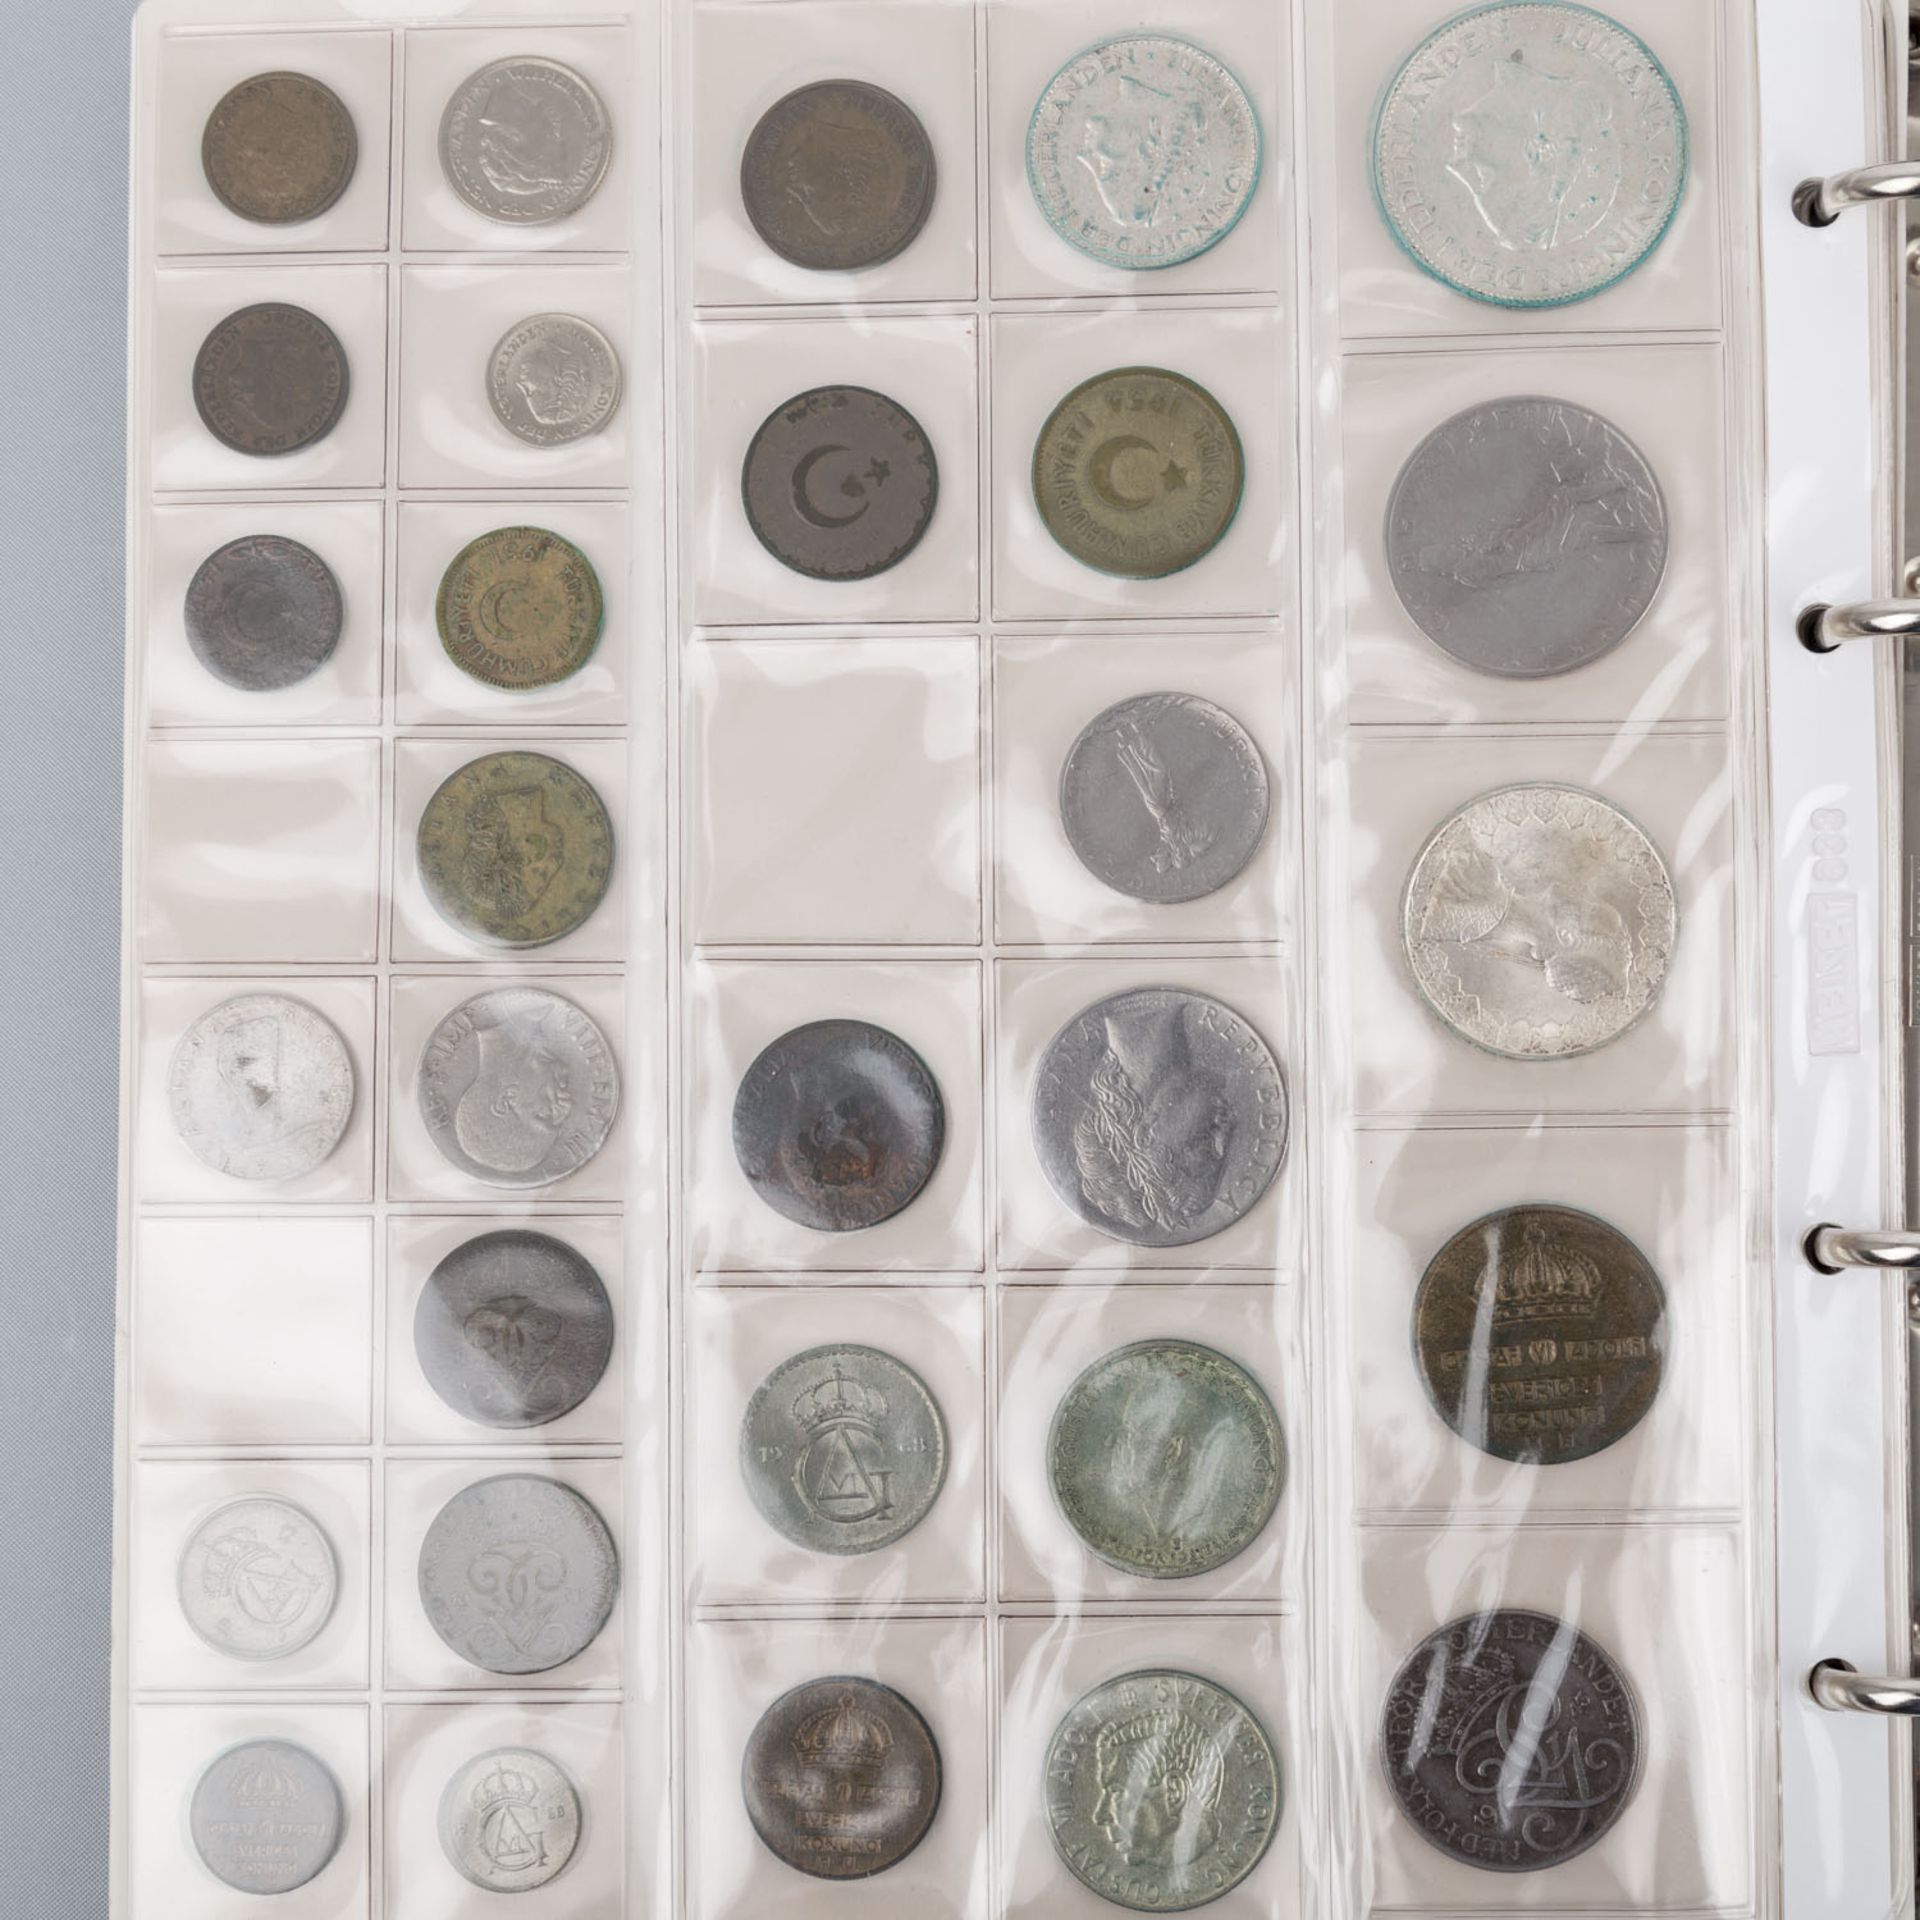 2 Alben mit Münzen und Banknoten –darunter BRD 5 und 10 DM, versch. Jahrgänge, ca. 390 DM nominal, - Bild 4 aus 7